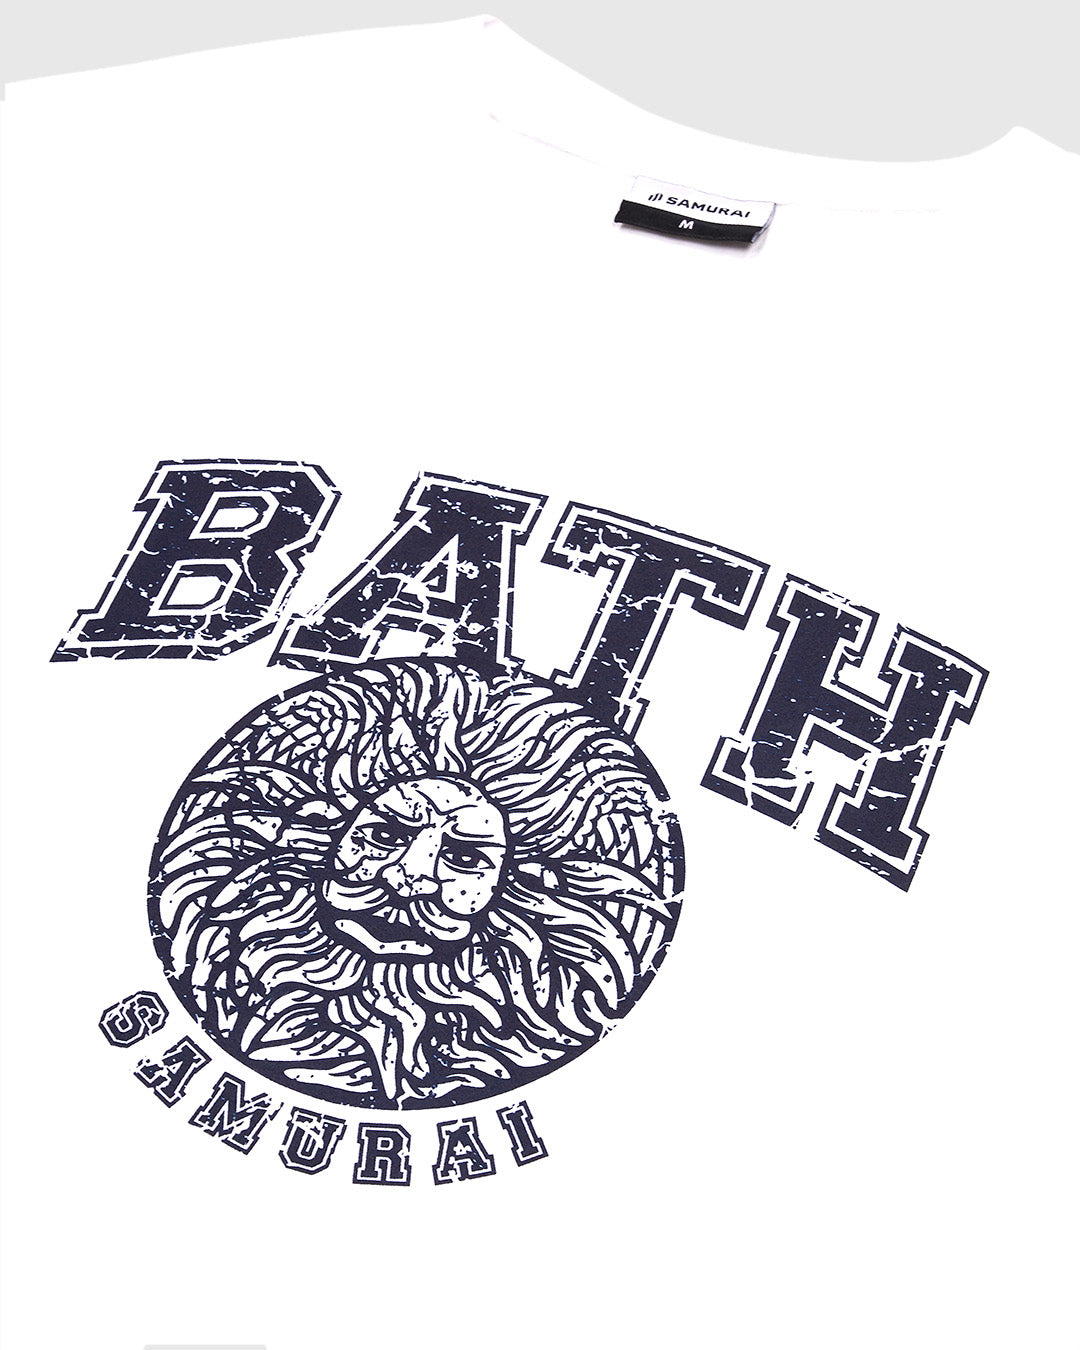 OC: 00-06 - Women's Bath T-Shirt - White